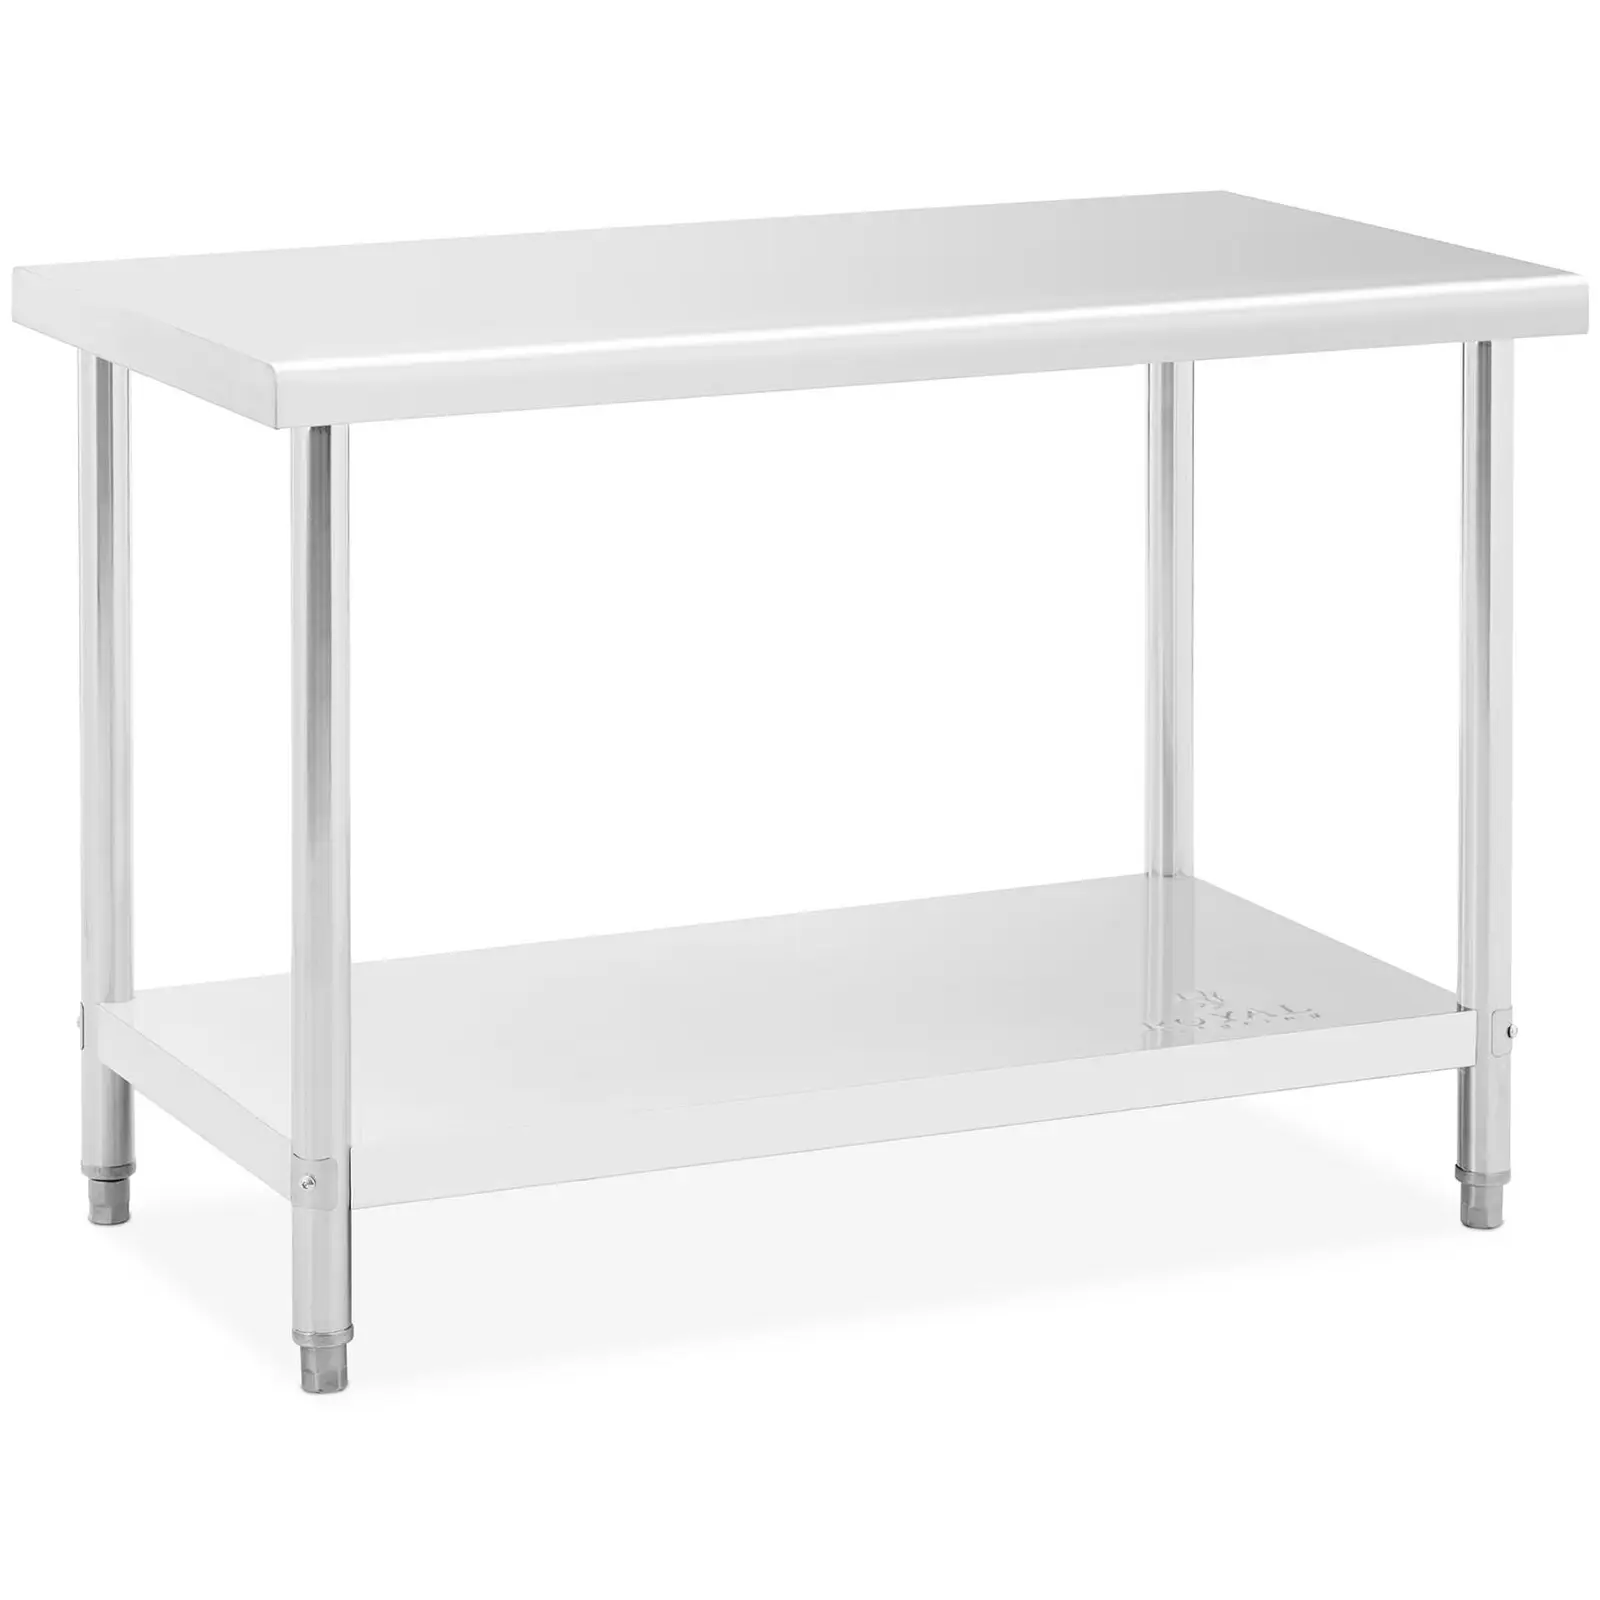 Pracovný stôl z ušľachtilej ocele - 120 x 60 cm - maximálna nosnosť 110 kg